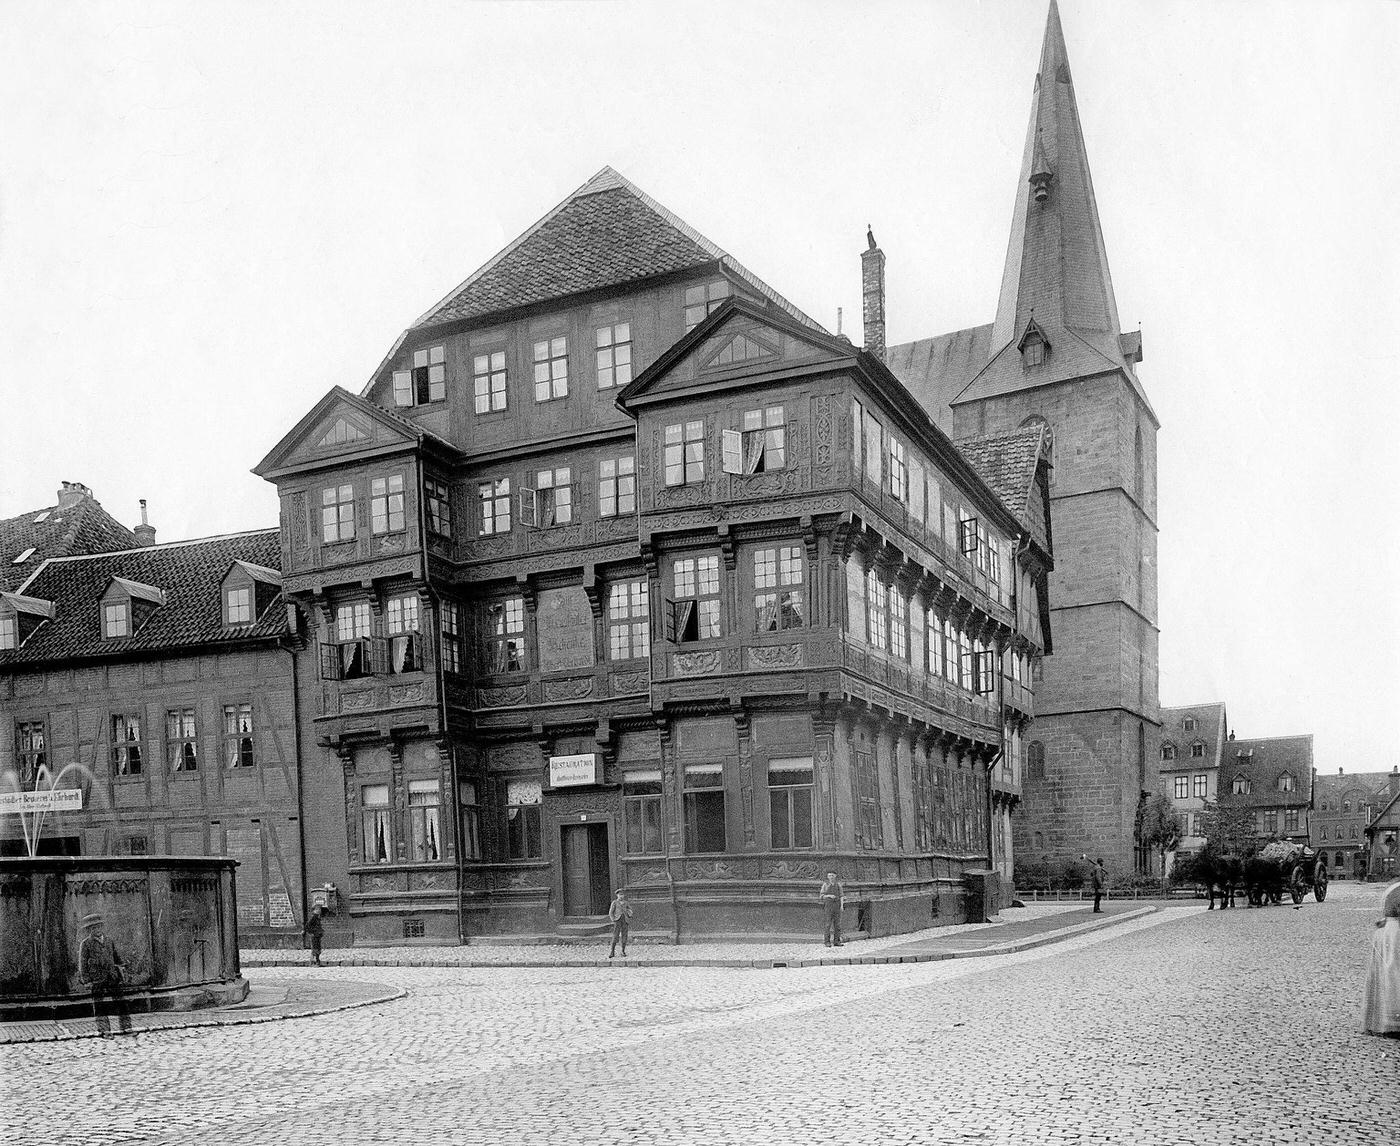 Neustädter Schänke (pub) in Germany, Hildesheim, around 1900